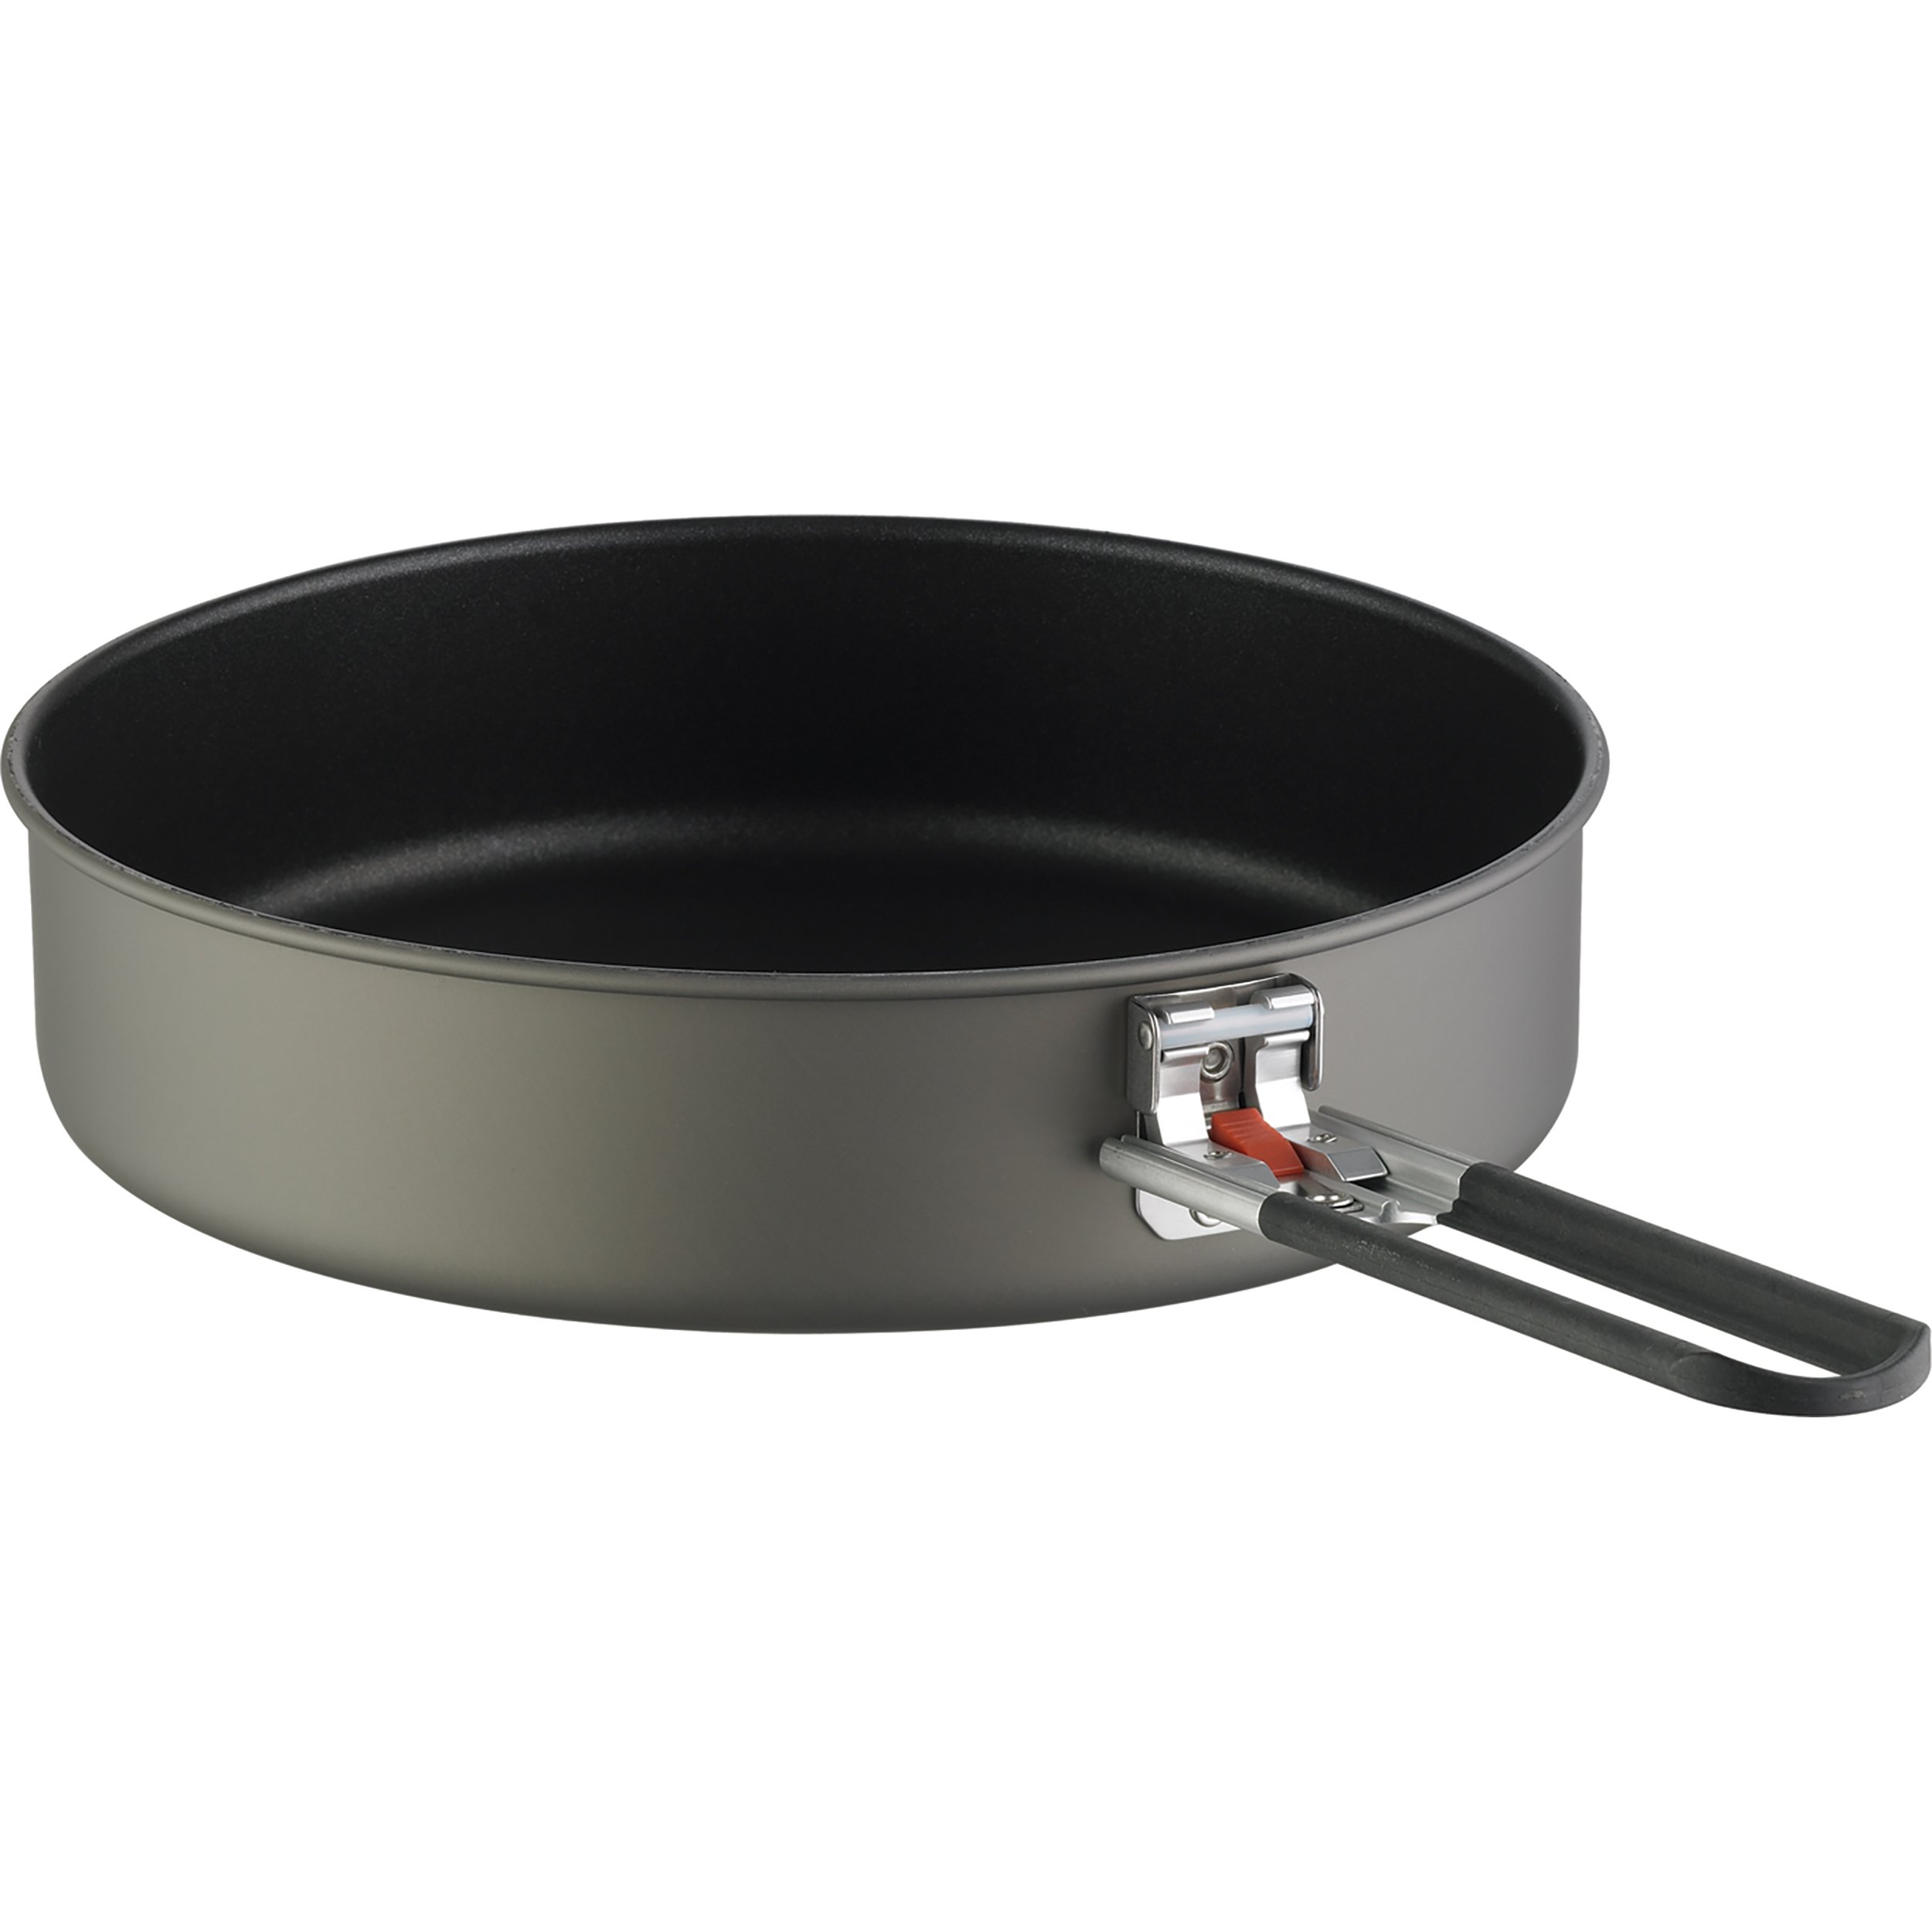 Cooks Standard Professional Sauté Pan Nonstick Aluminum Frying Pan